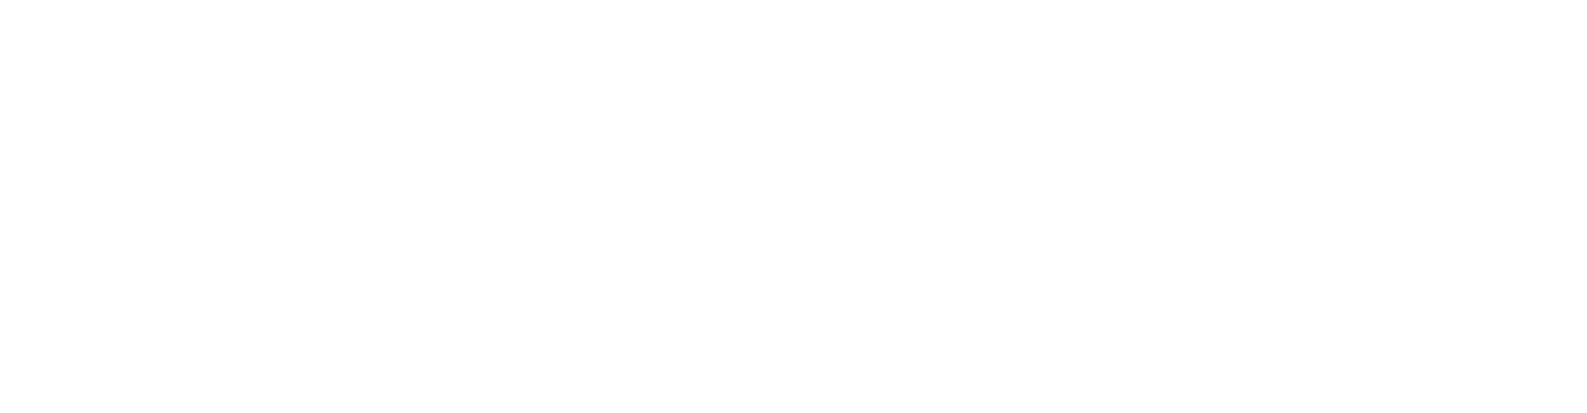 POSCO logo large for dark backgrounds (transparent PNG)